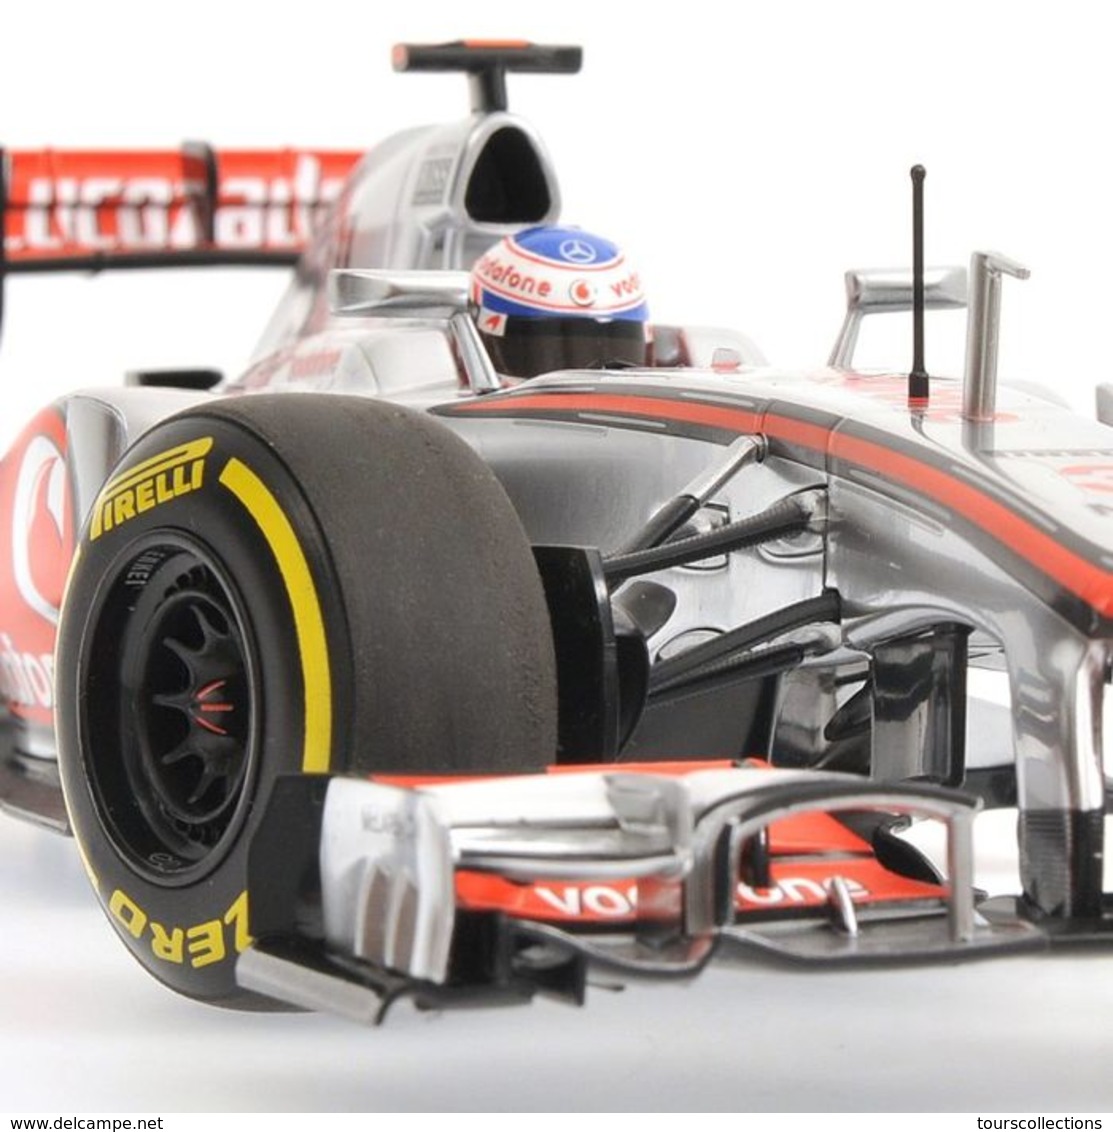 MINICHAMPS 530 121803 NEUVE en boite McLaren Mercedes MP4-27 2012 1:18 #3 Jenson Button (GBR) F1 Formule 1 au 1/18